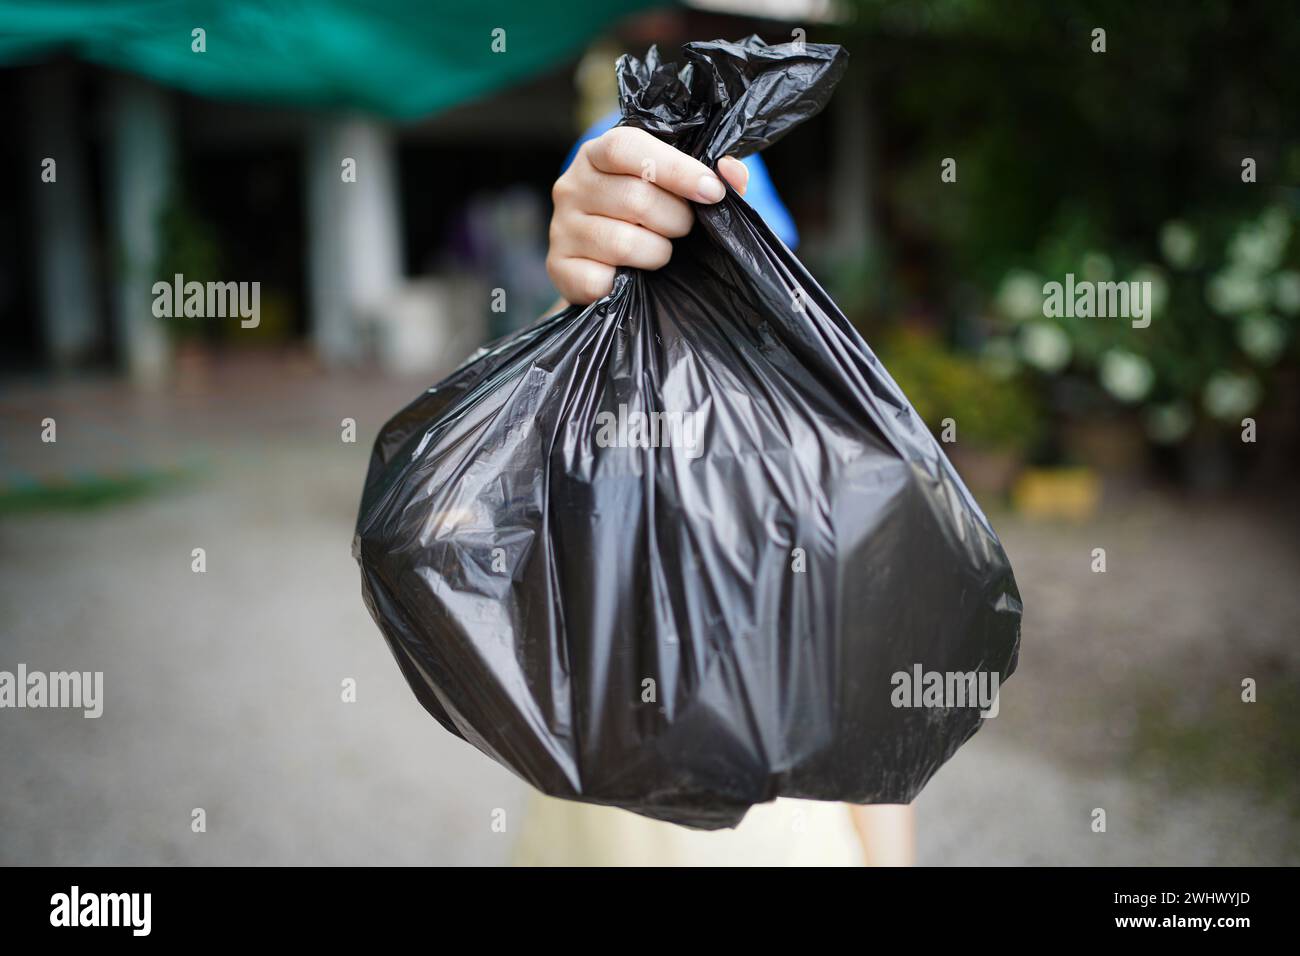 Freiwillige Wohltätigkeitsorganisation womanÂ Hand hält Müllbeutel und Plastikflaschenmüll zum Recycling für die Reinigung im Park Freiwilligendienst Stockfoto